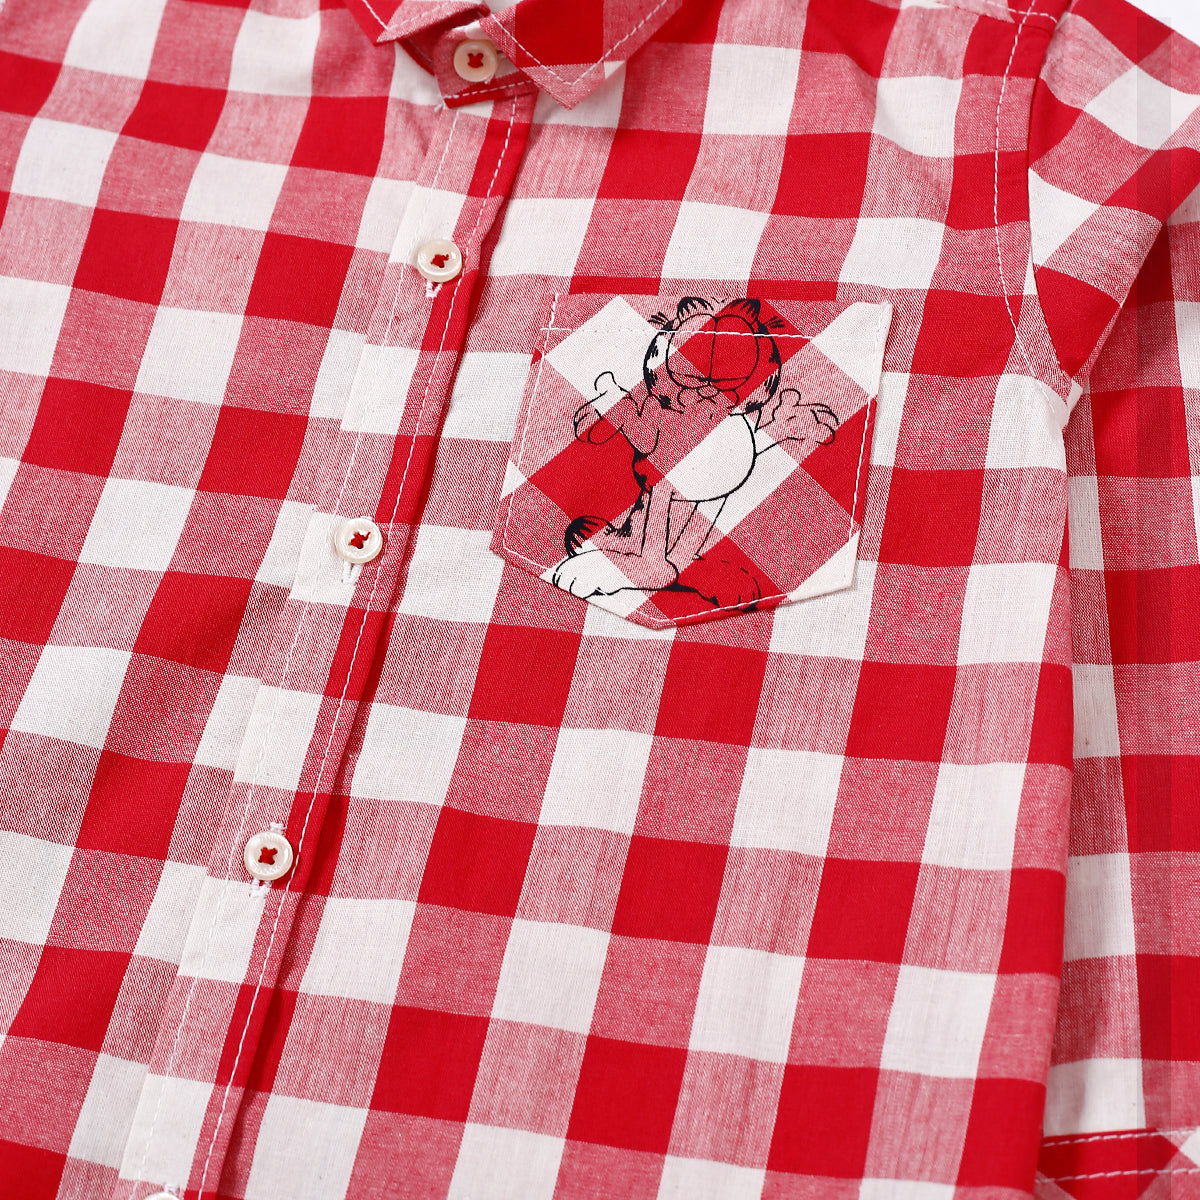 Red & White Checkered Shirt